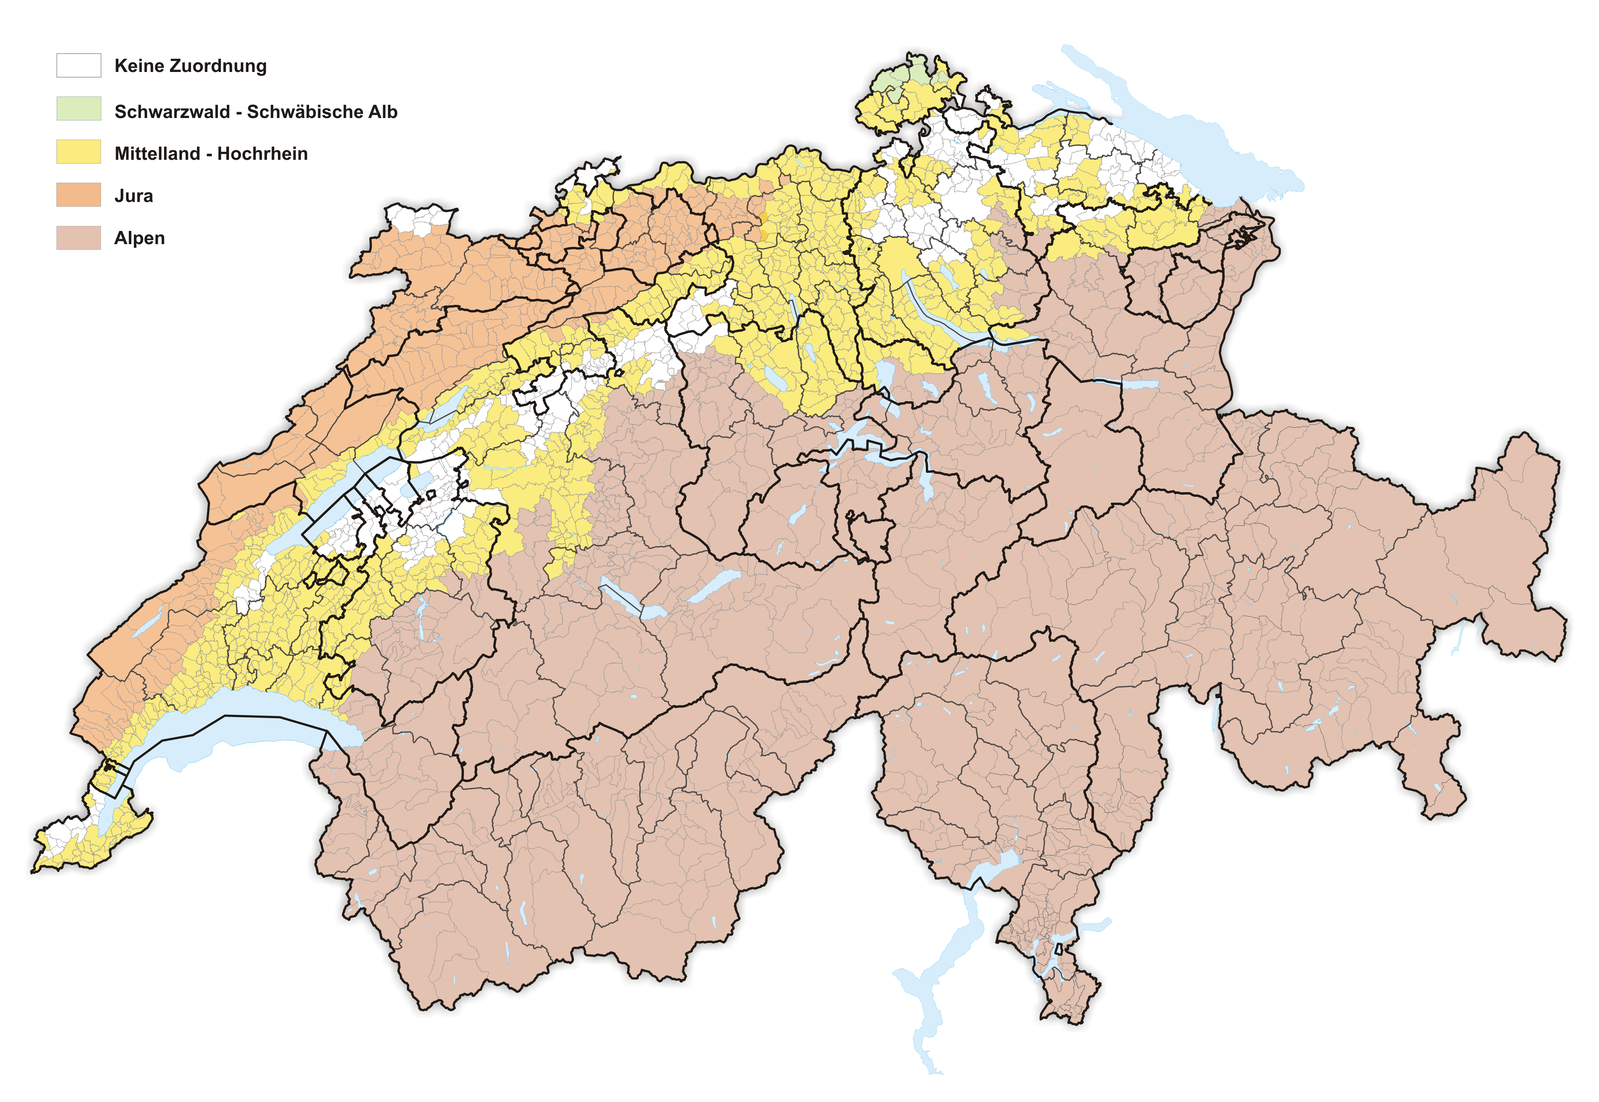 Das schweiz. Jura Швейцария на карте. Швейцария Альпы на карте. Швейцарское плато на карте. Швейцарское плато Швейцарии.